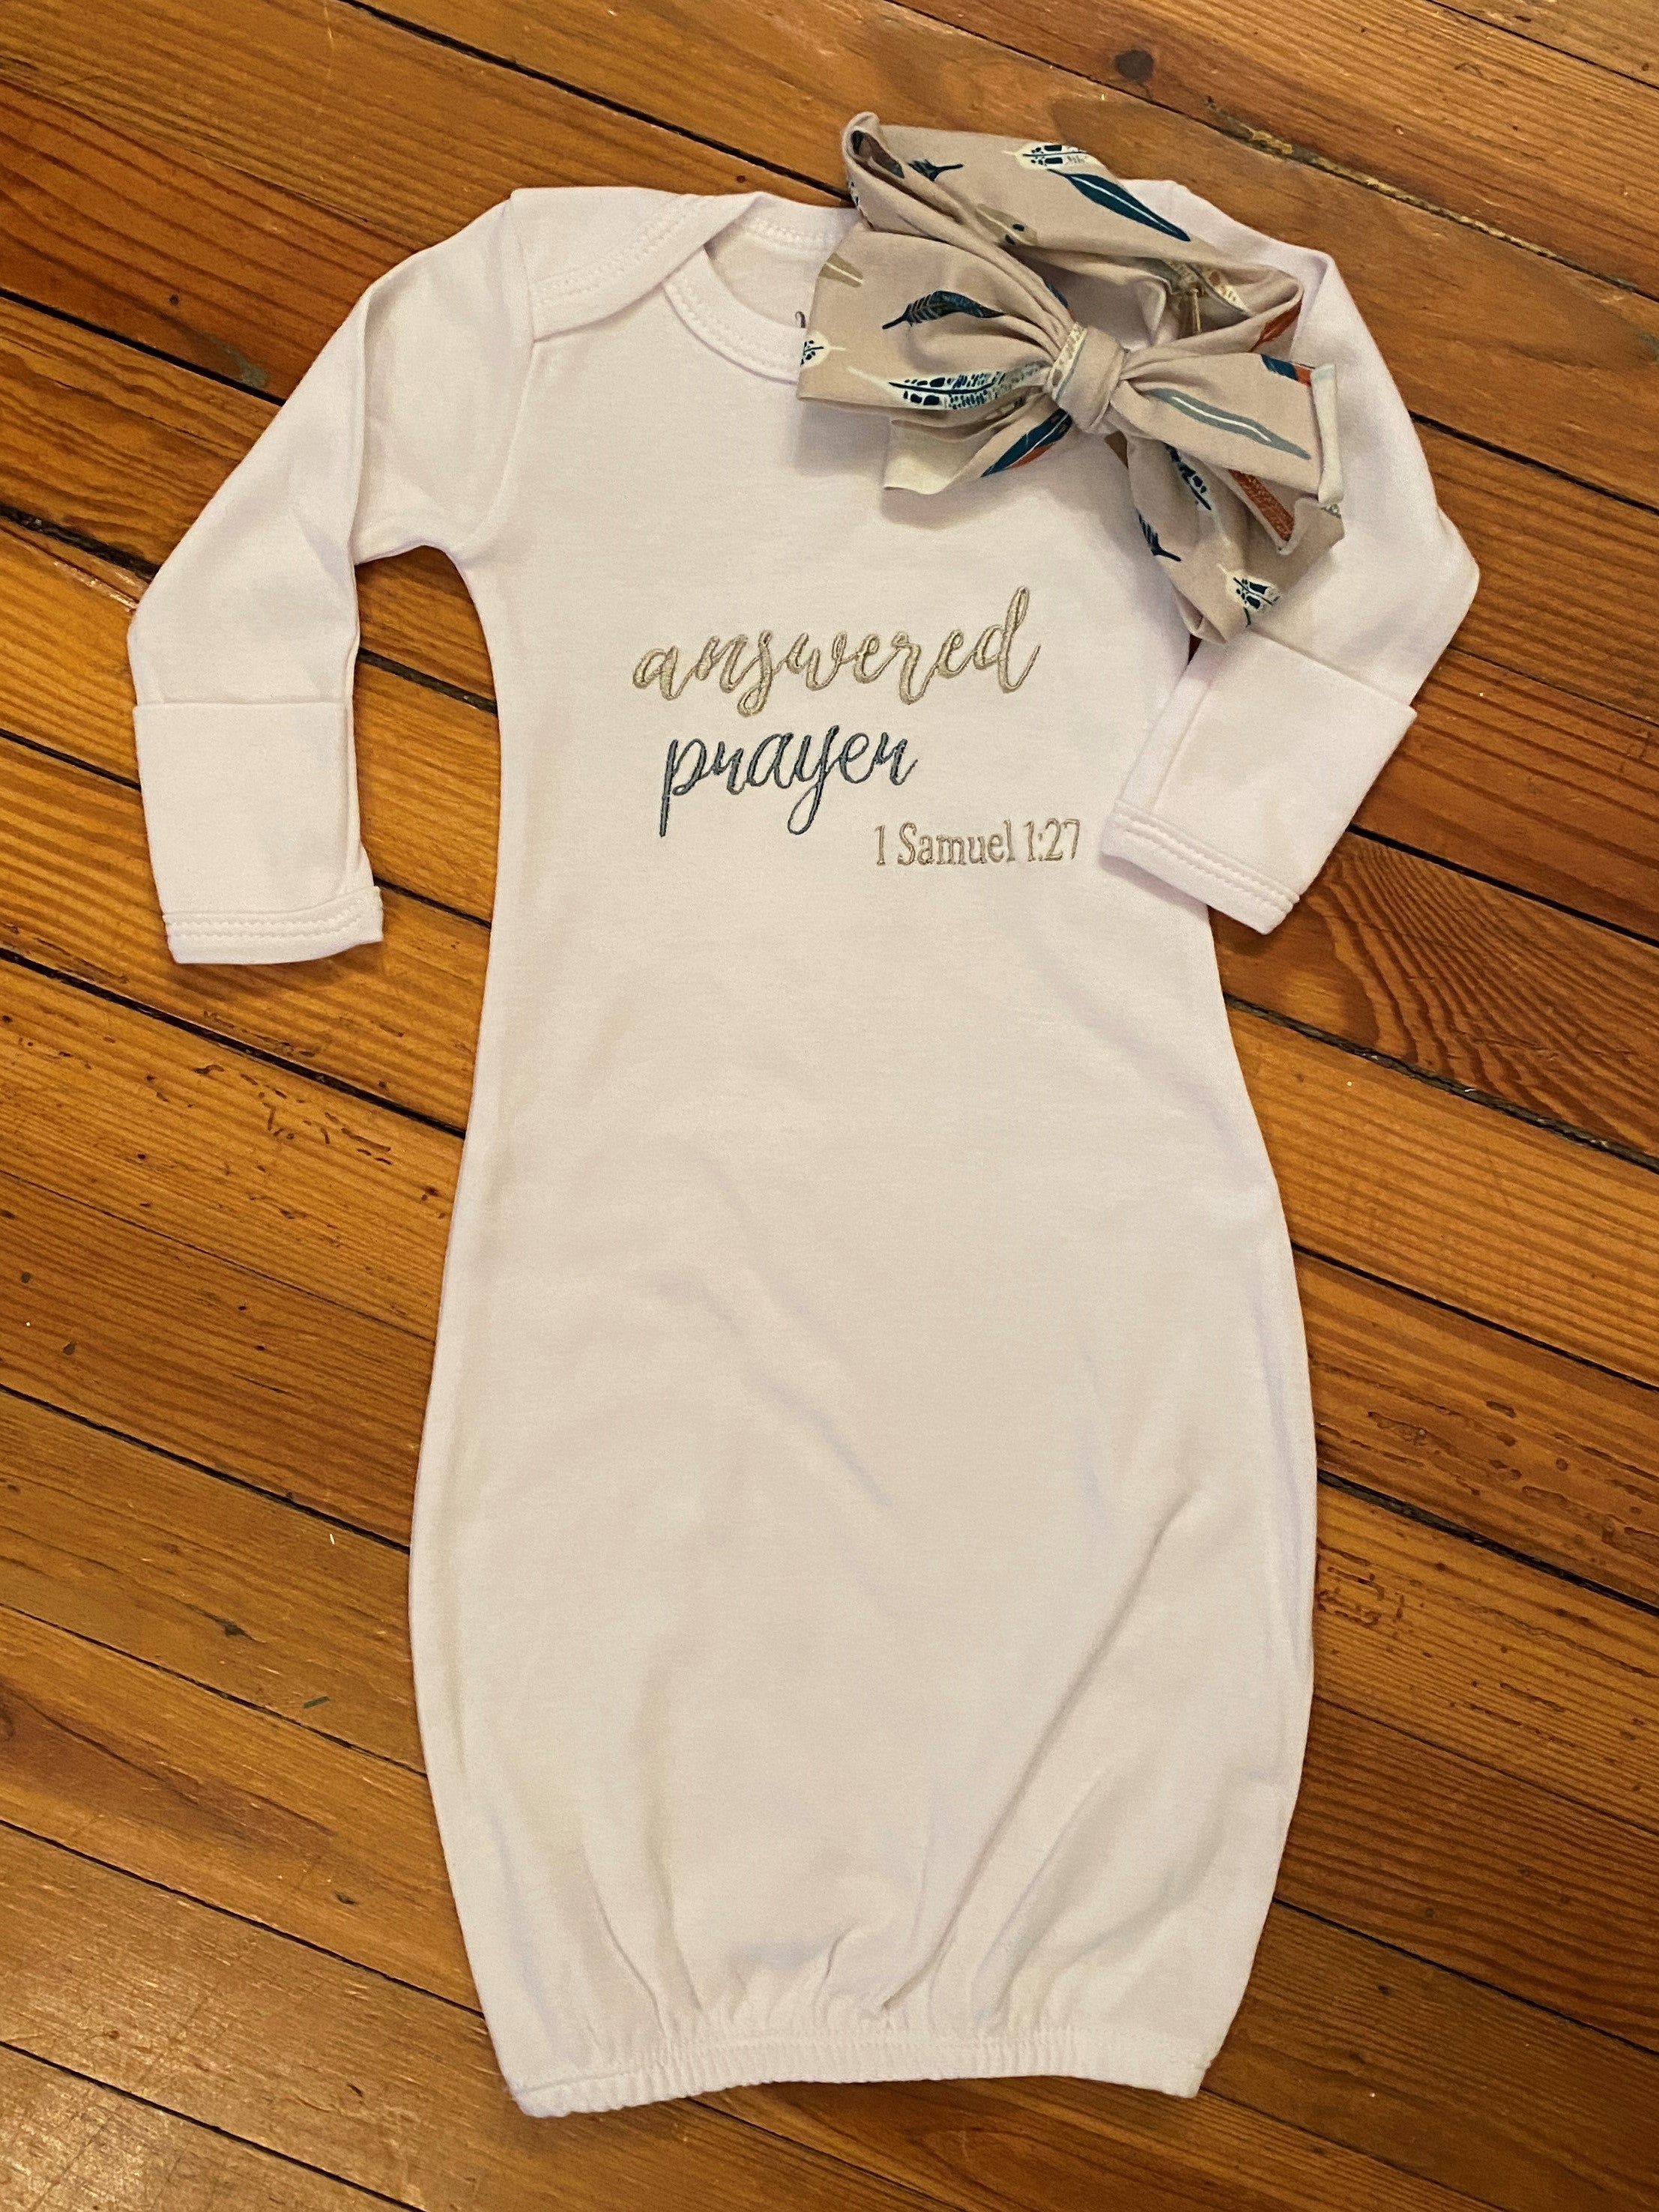 Newborn Baby Gowns